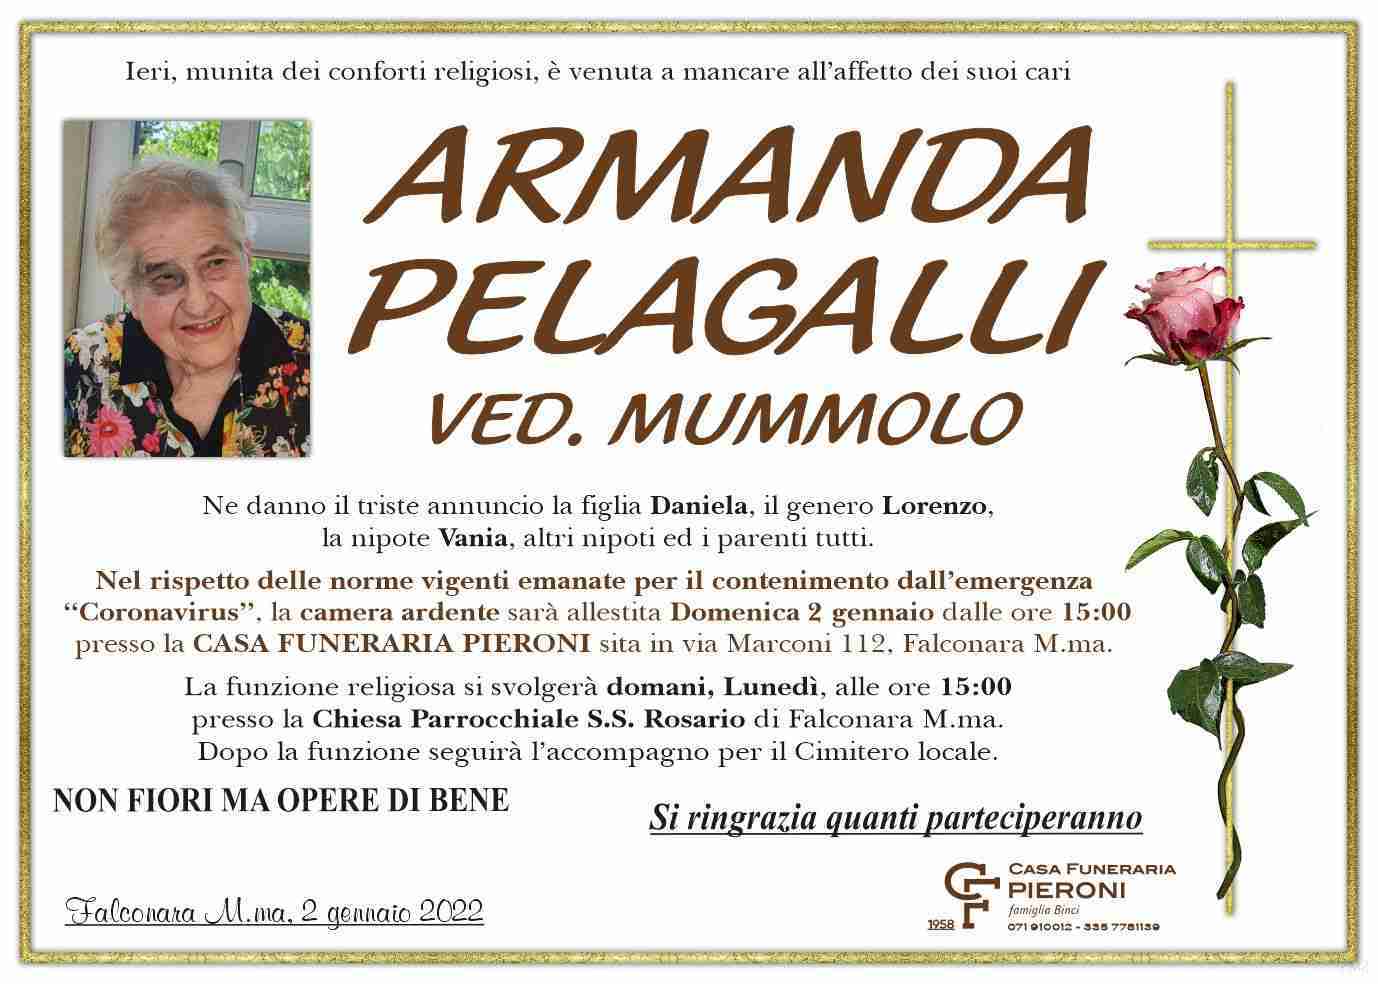 Armanda Pelagalli